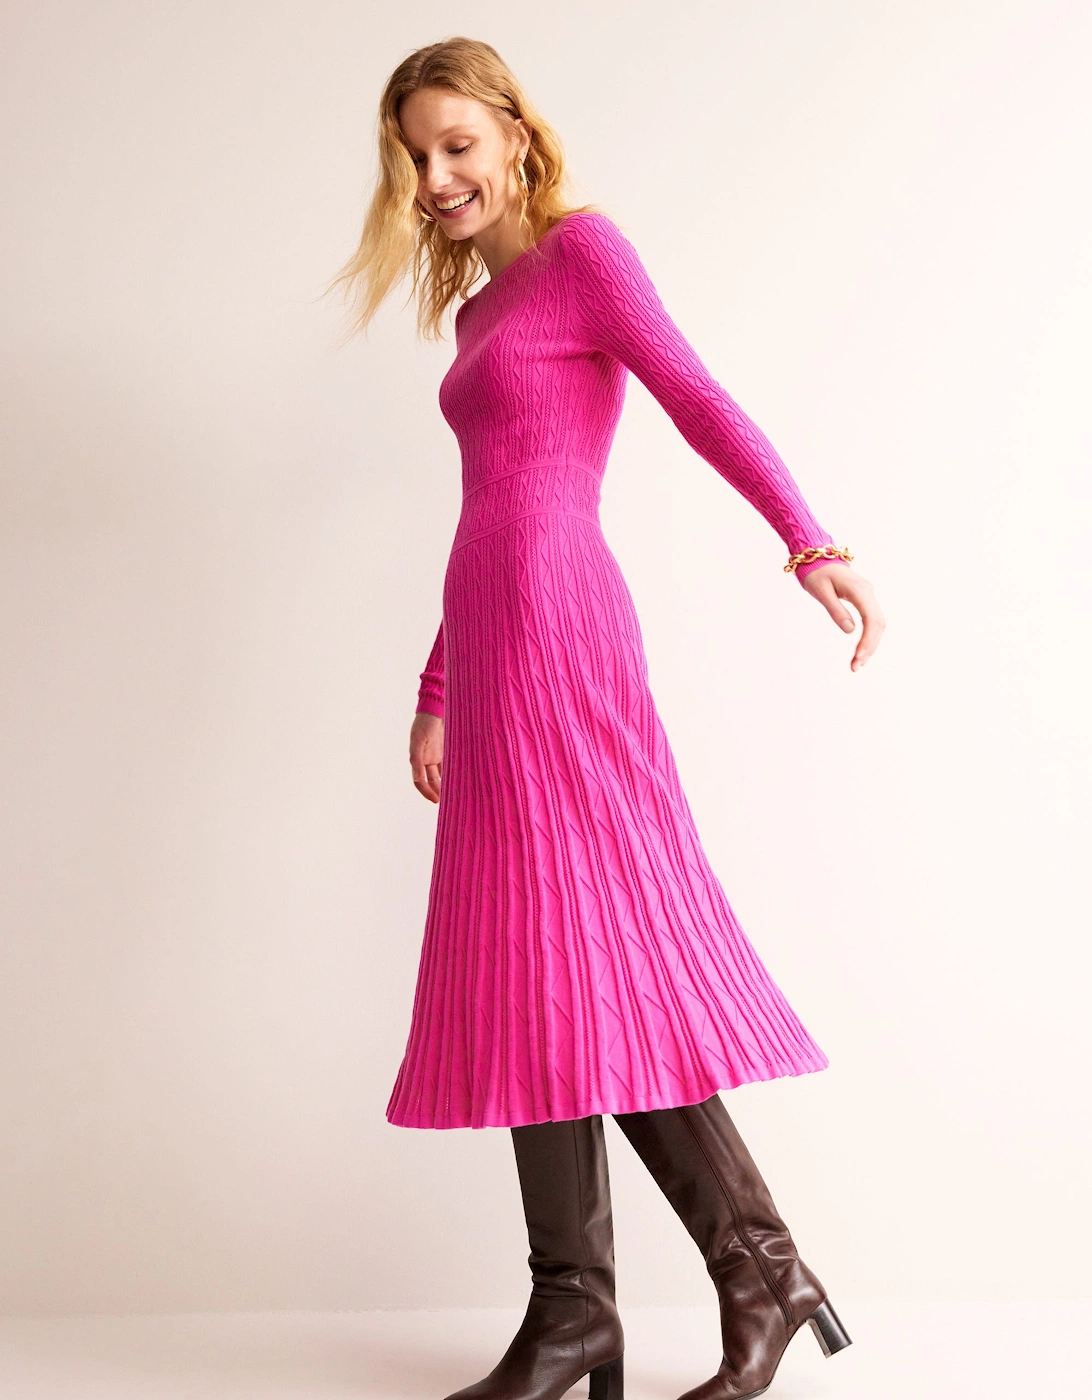 Imogen Empire Knitted Dress, 7 of 6